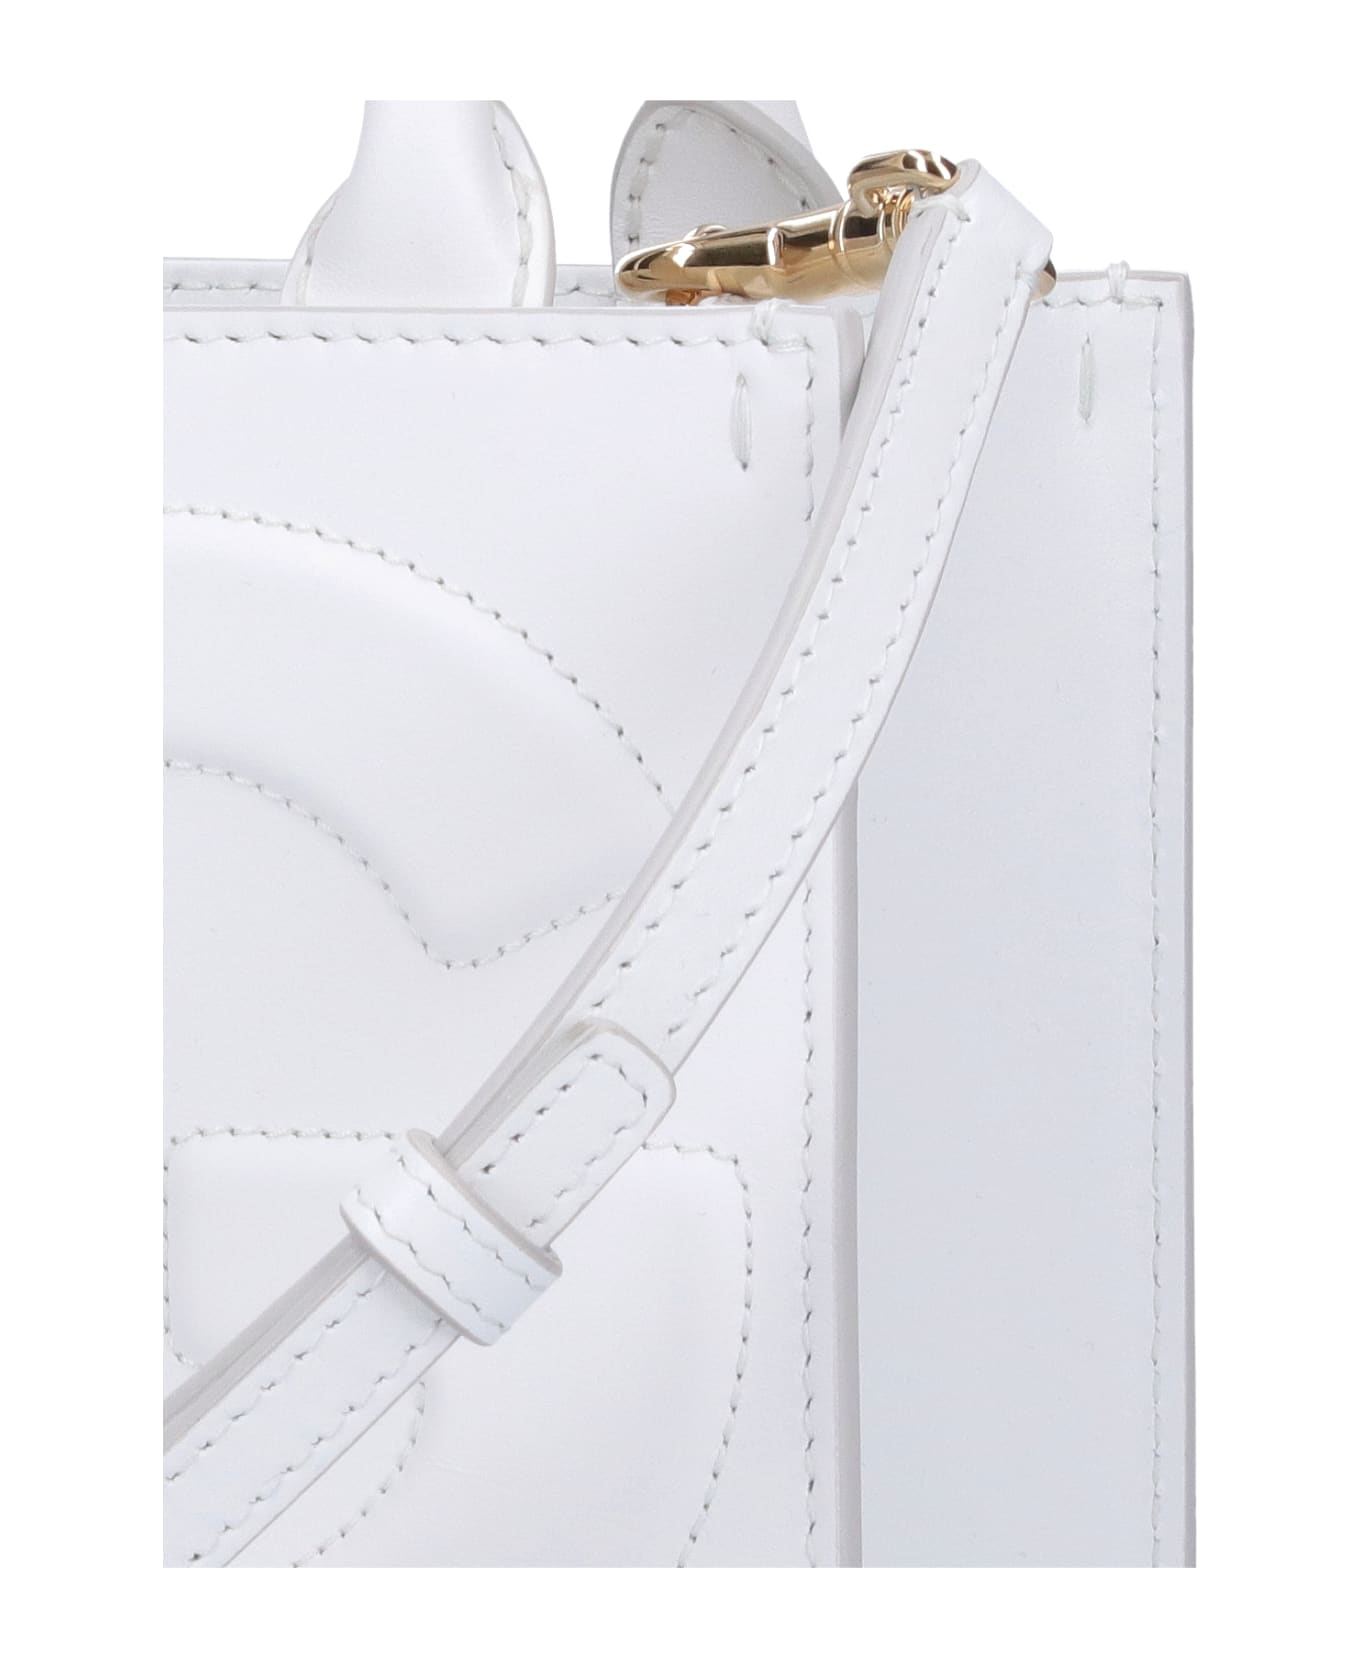 Dolce & Gabbana 'dg' Mini Tote - White